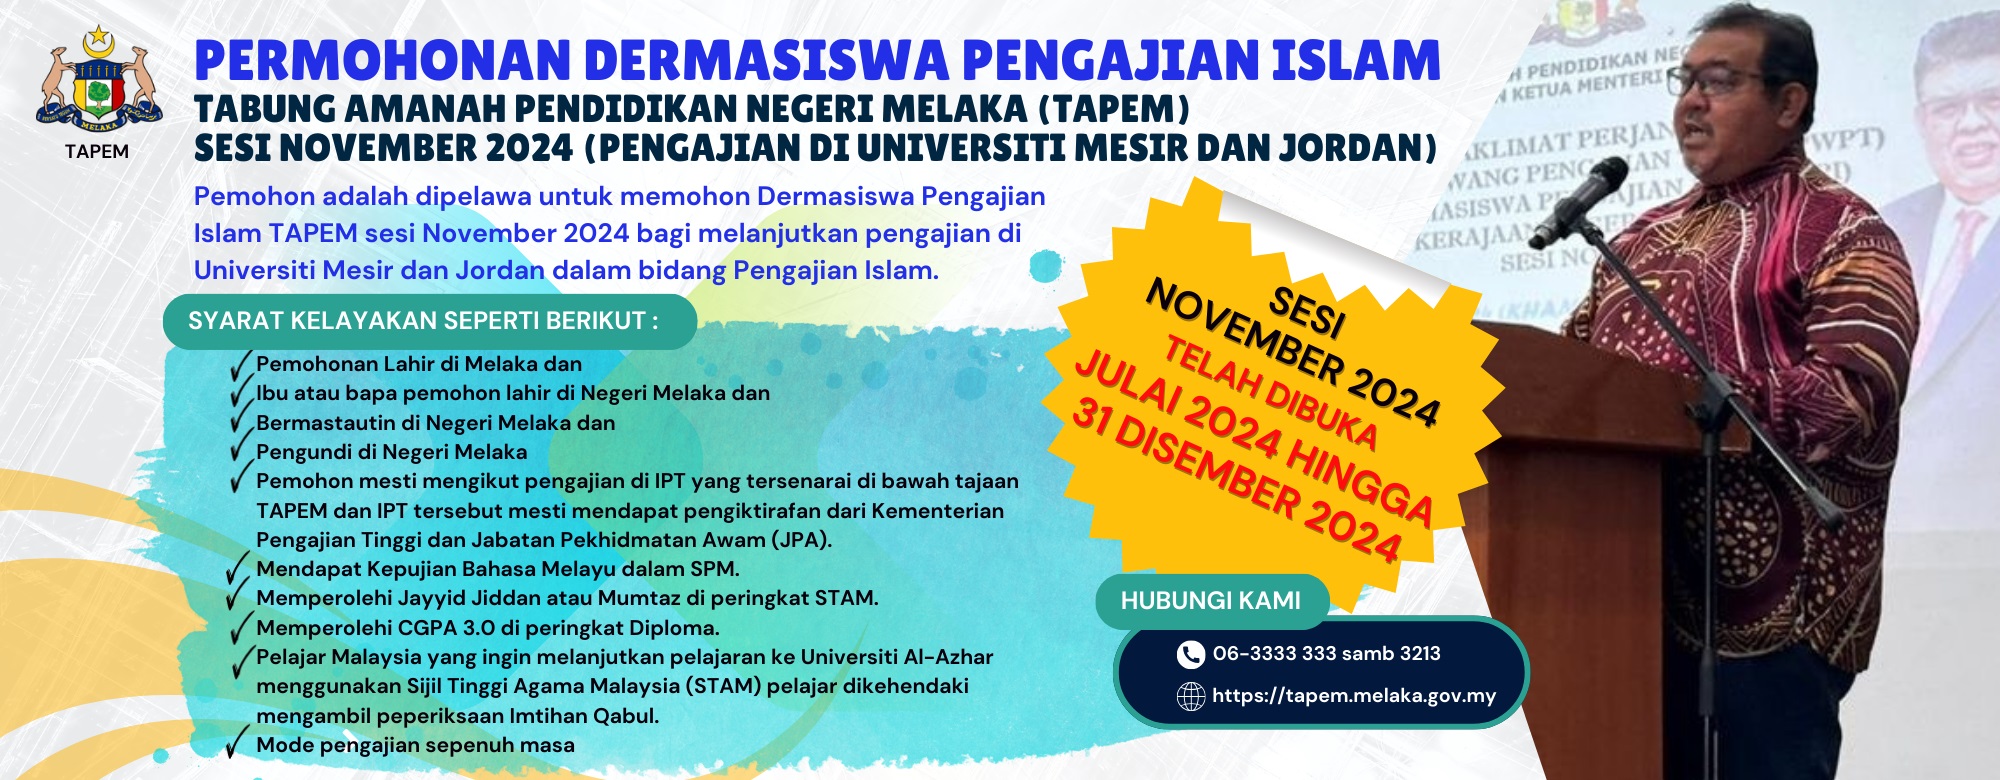 Dermasiswa Pengajian Islam (DPI)